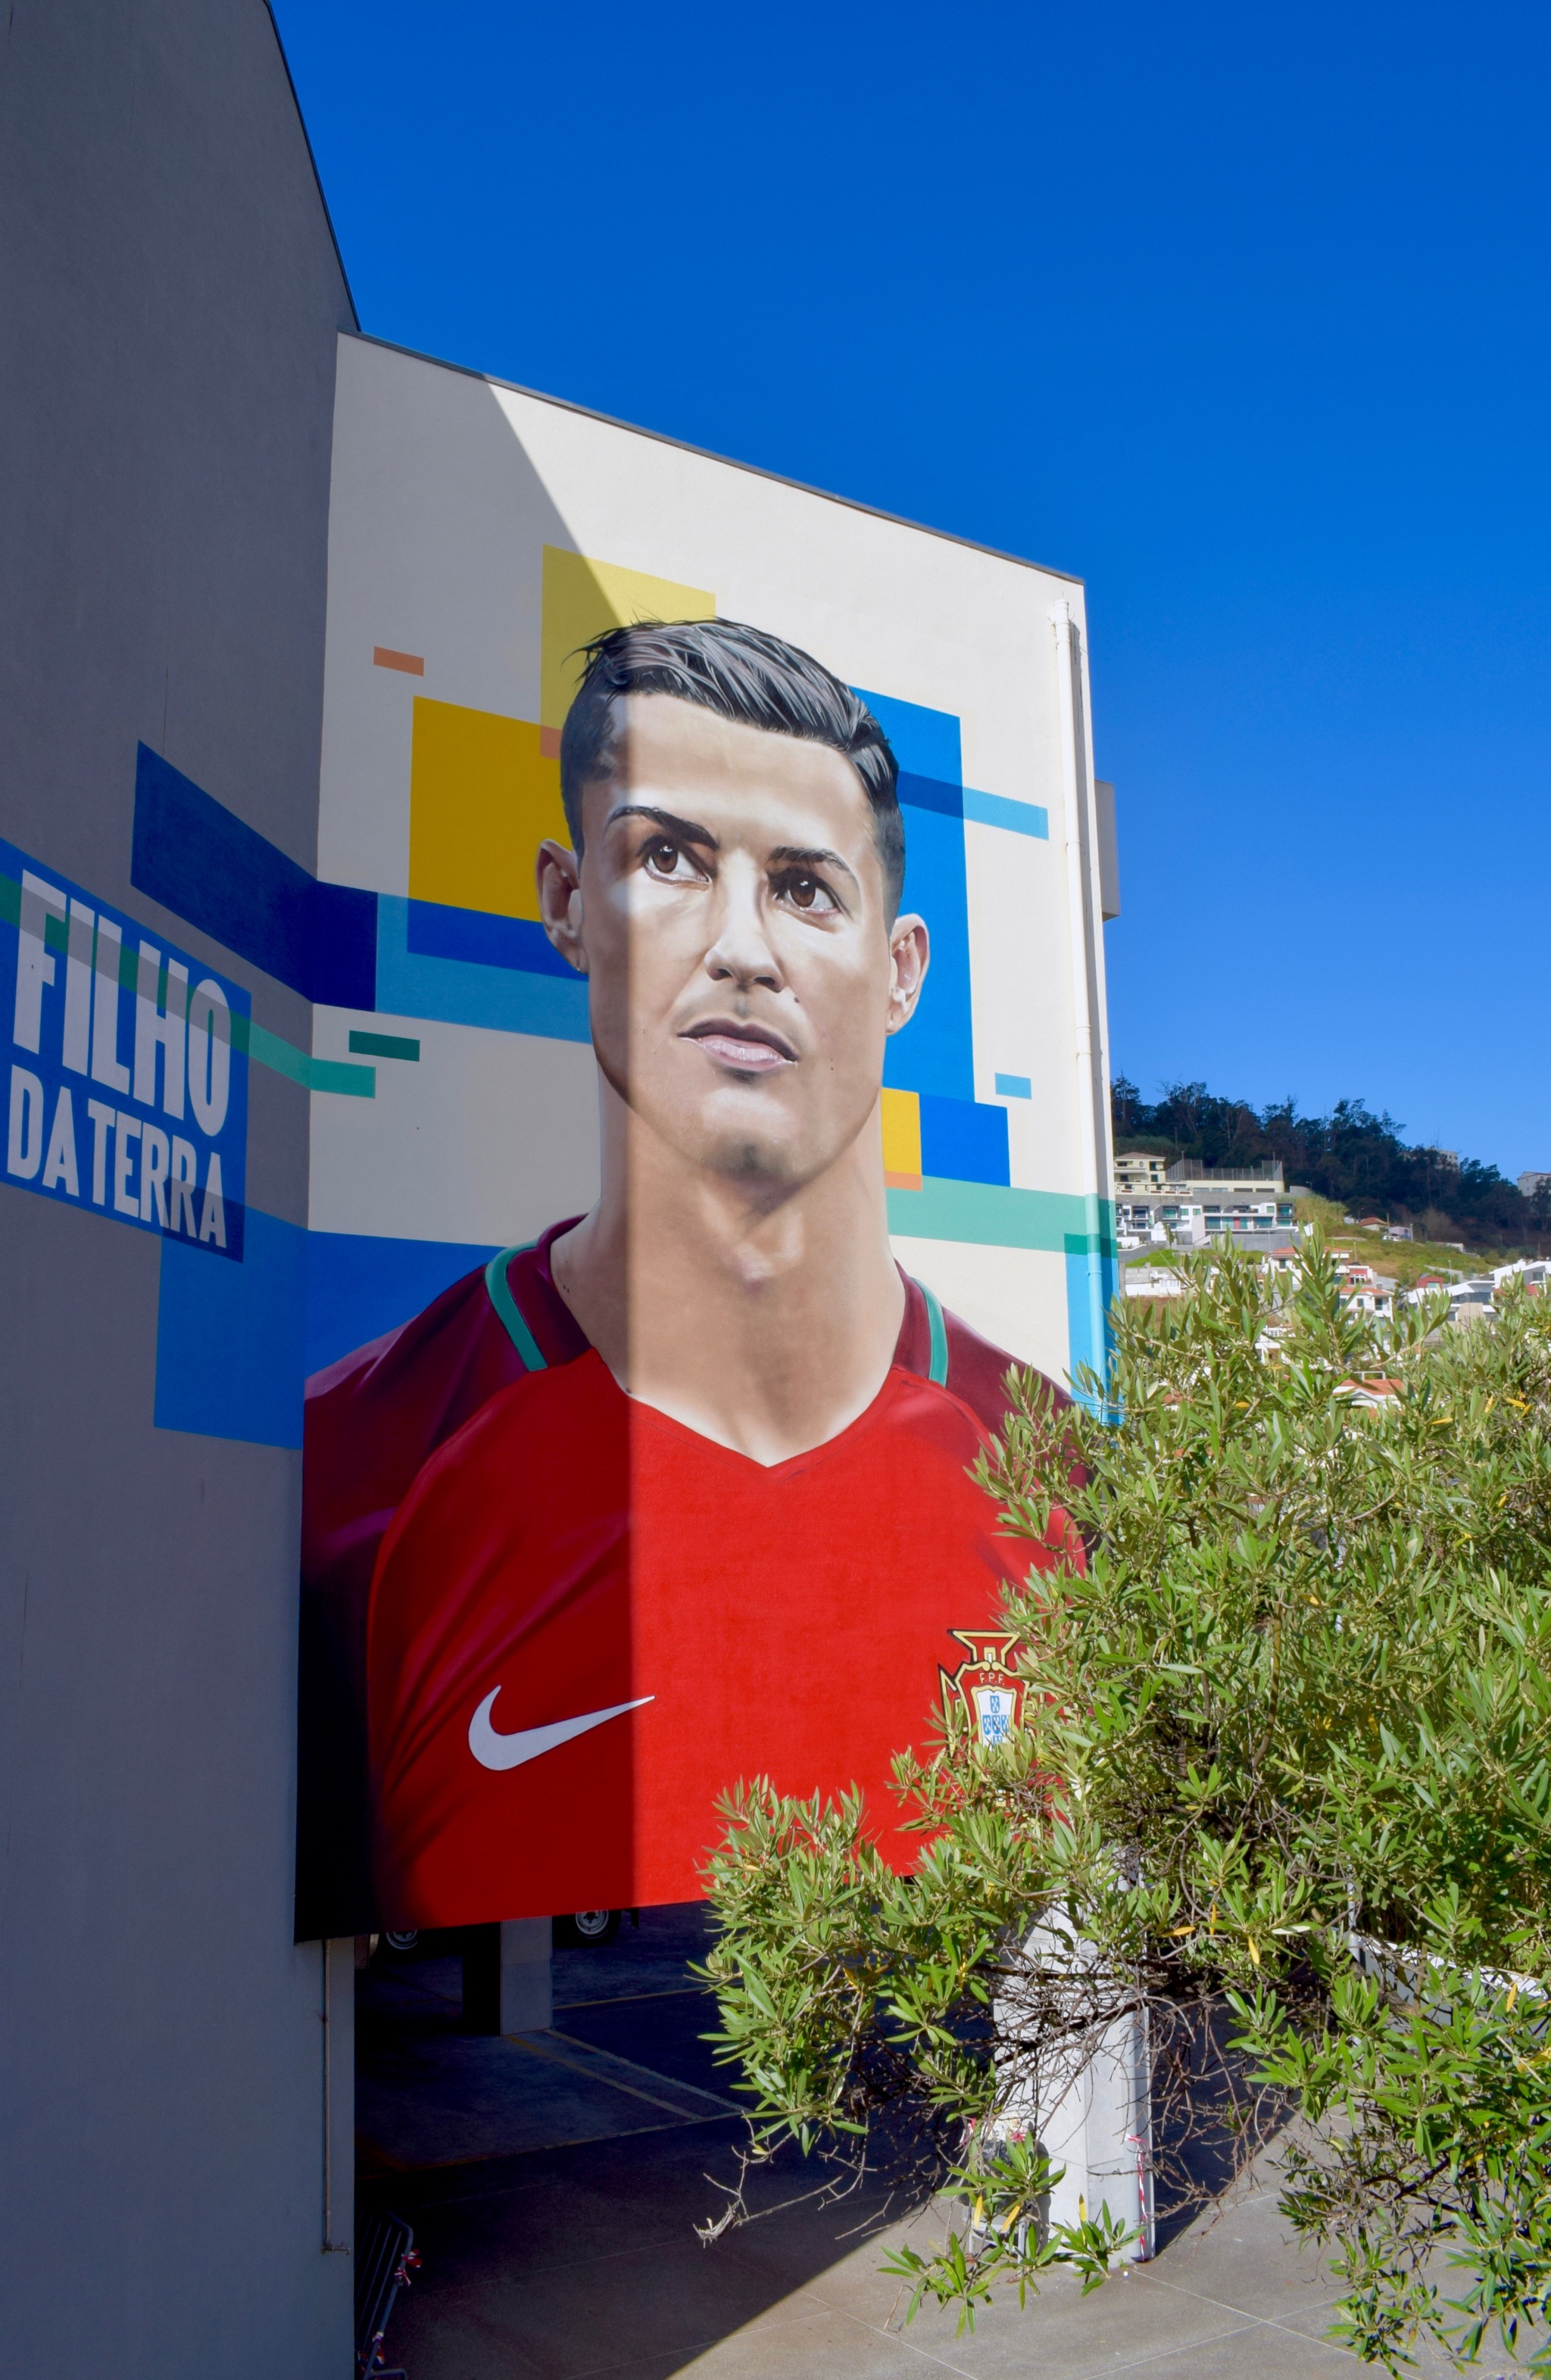 Mural de Cristiano Ronaldo